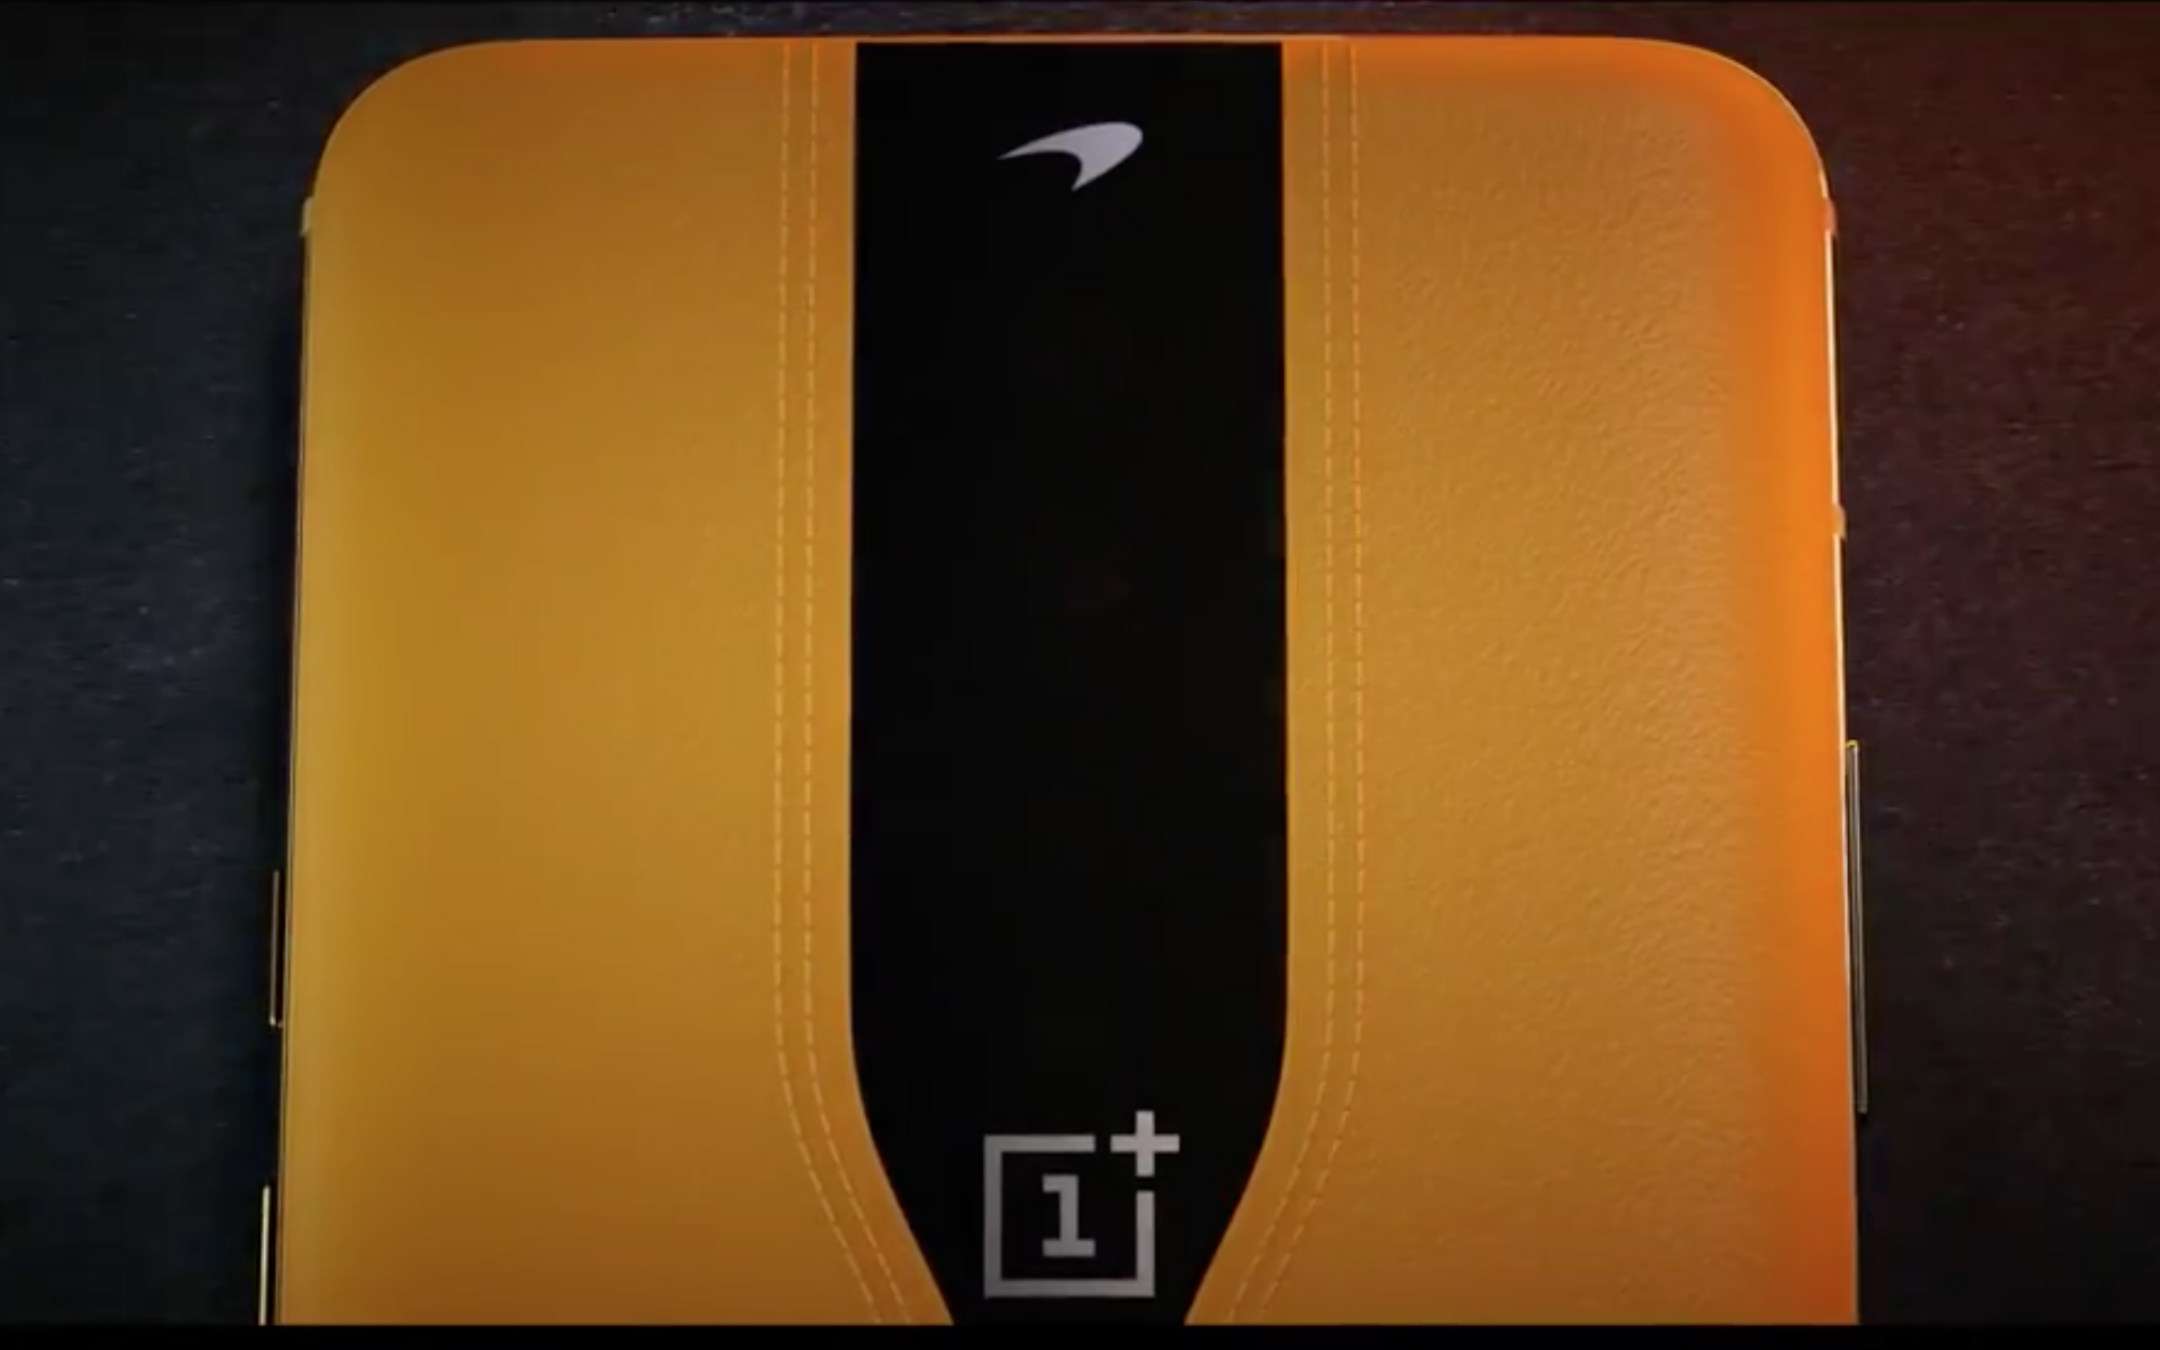 Pete Lau: OnePlus Concept One arriverà sul mercato